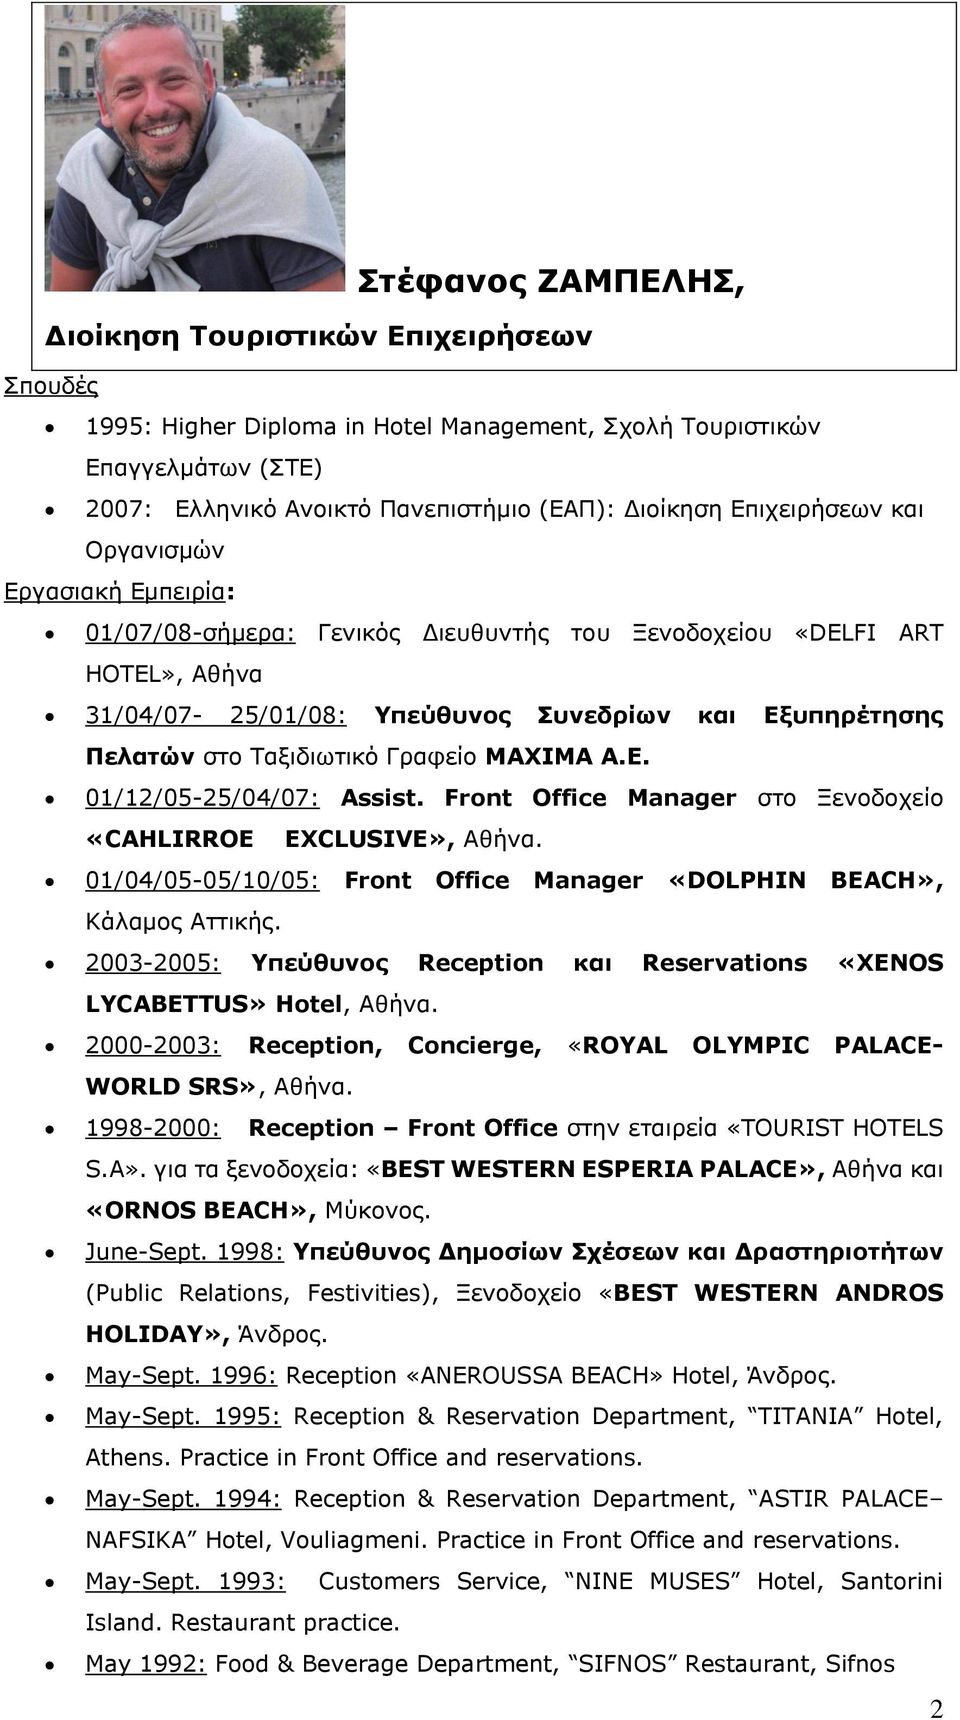 Ταξιδιωτικό Γραφείο MAXIMA Α.Ε. 01/12/05-25/04/07: Assist. Front Office Manager στο Ξενοδοχείο «CAHLIRROE EXCLUSIVE», Αθήνα. 01/04/05-05/10/05: Front Office Manager «DOLPHIN BEACH», Κάλαμος Αττικής.